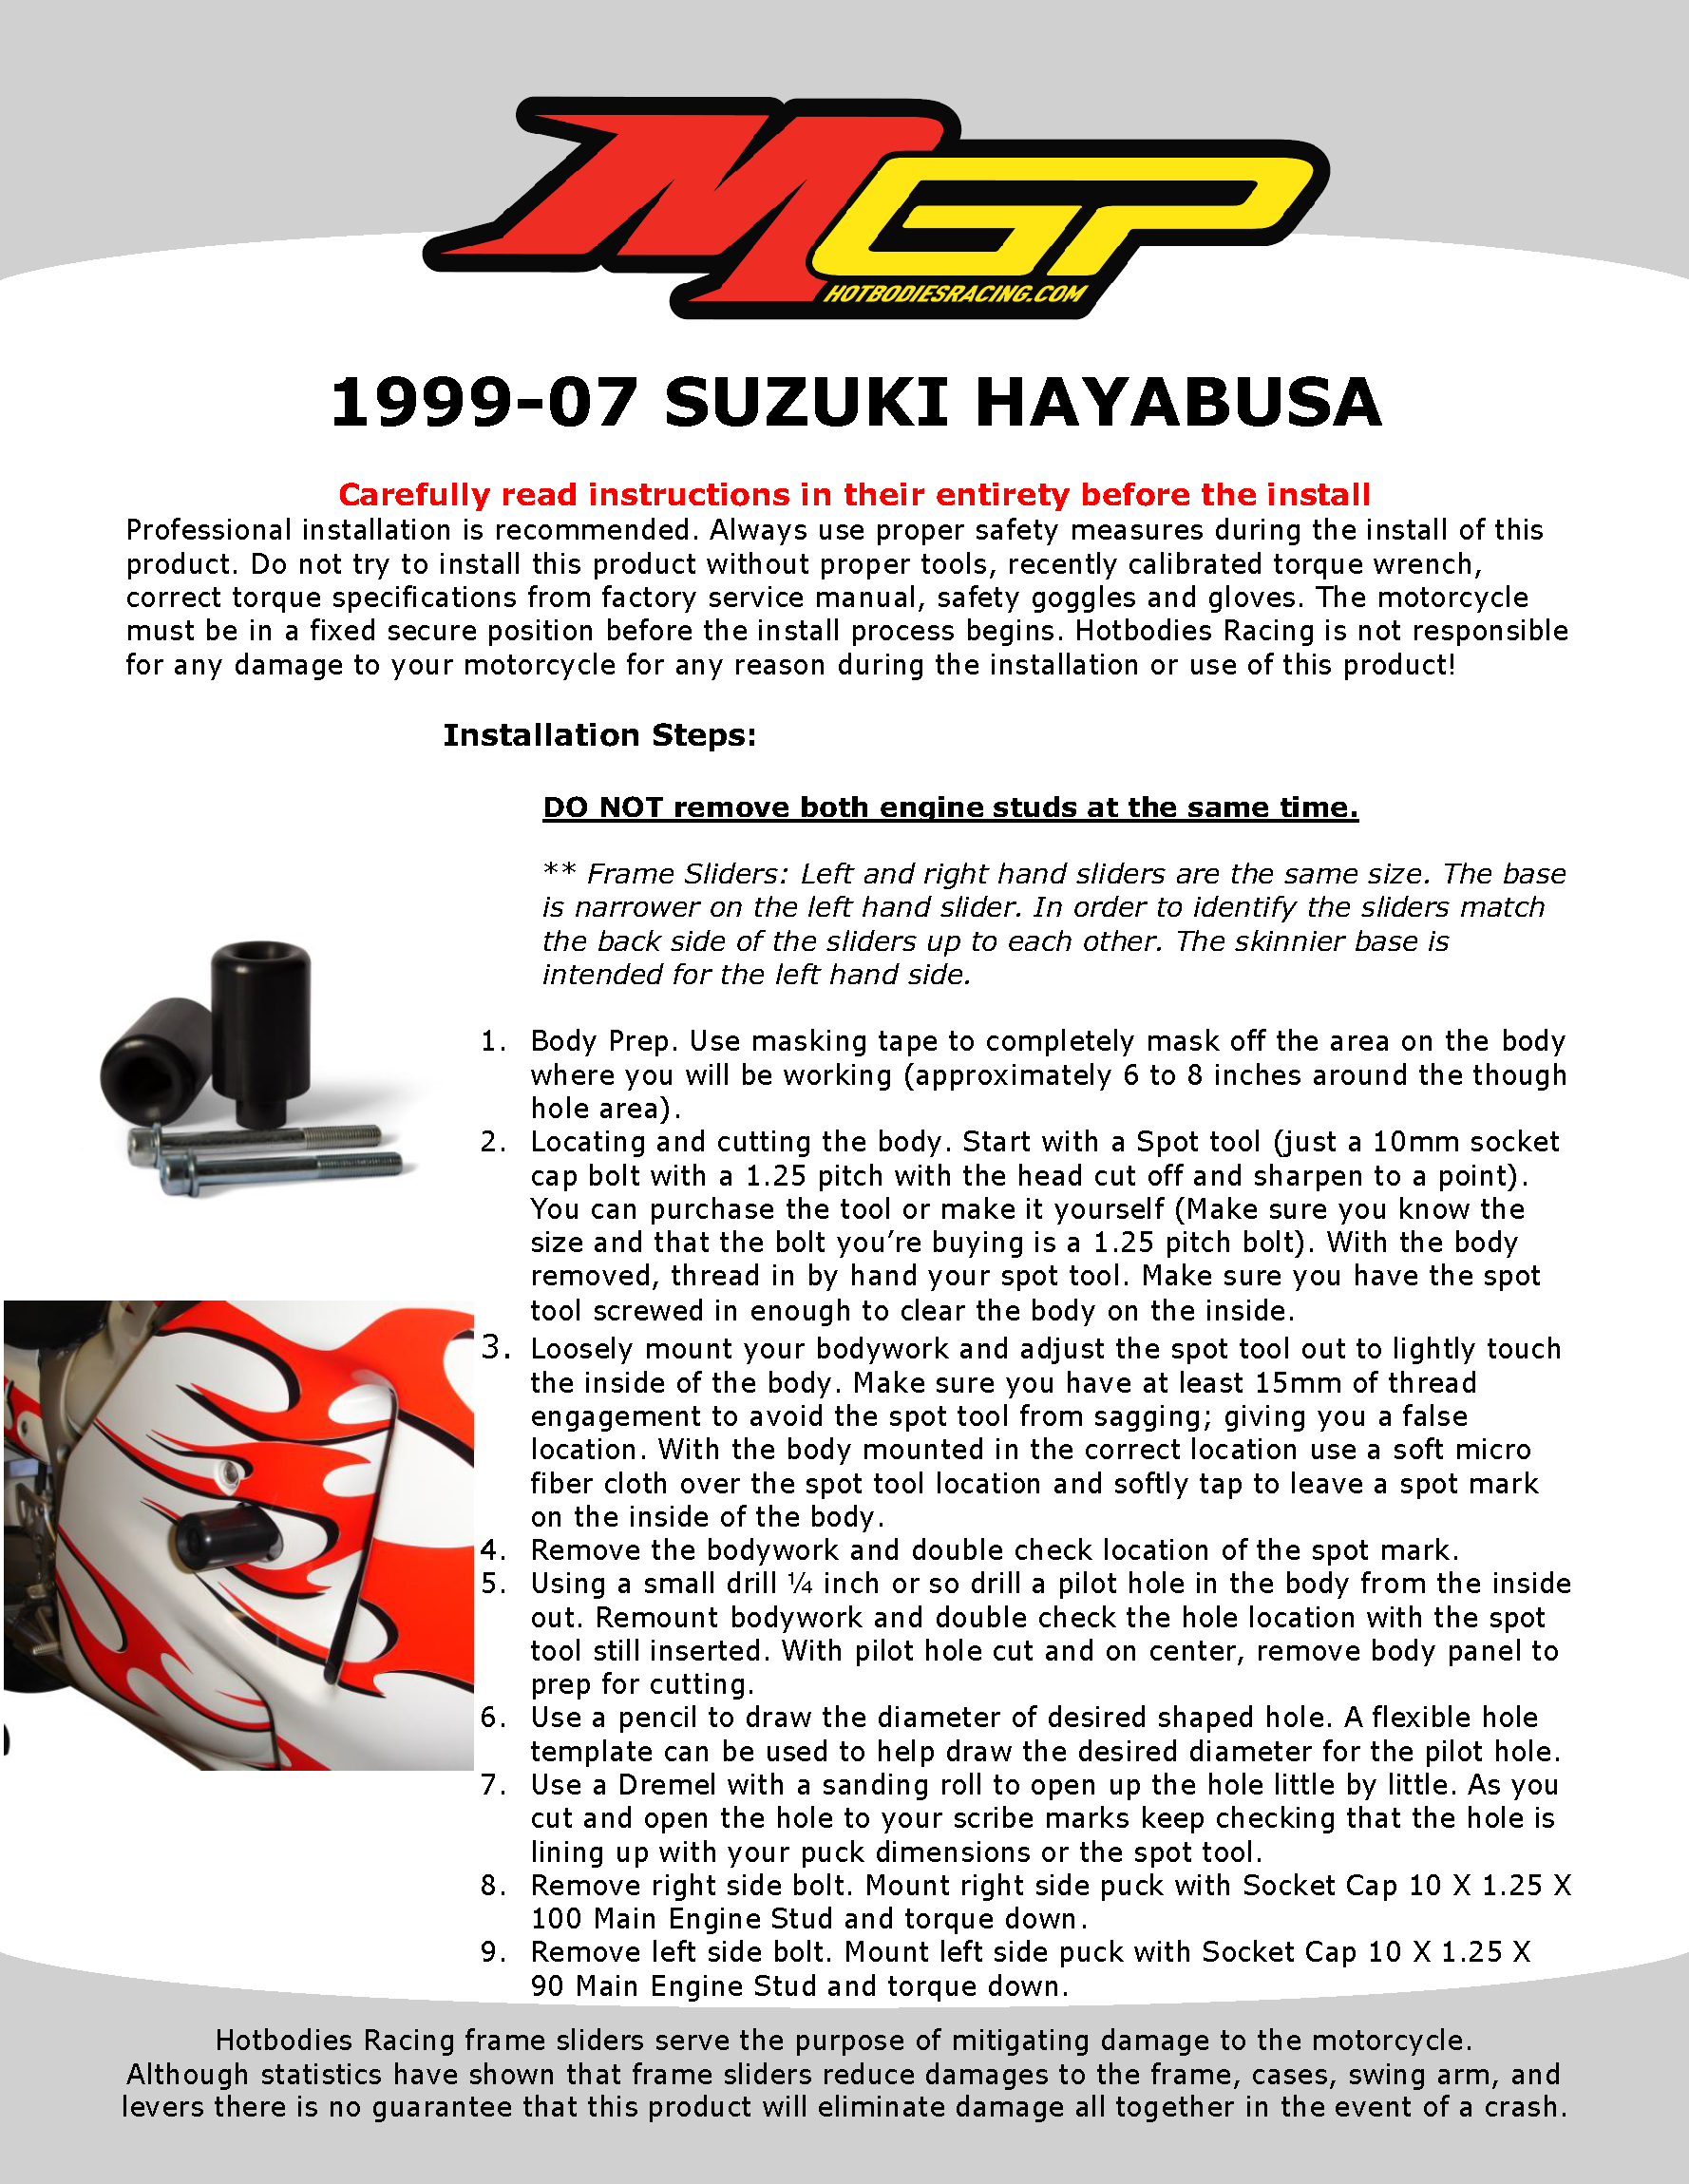 

1999-07 SUZUKI HAYABUSA Installation

